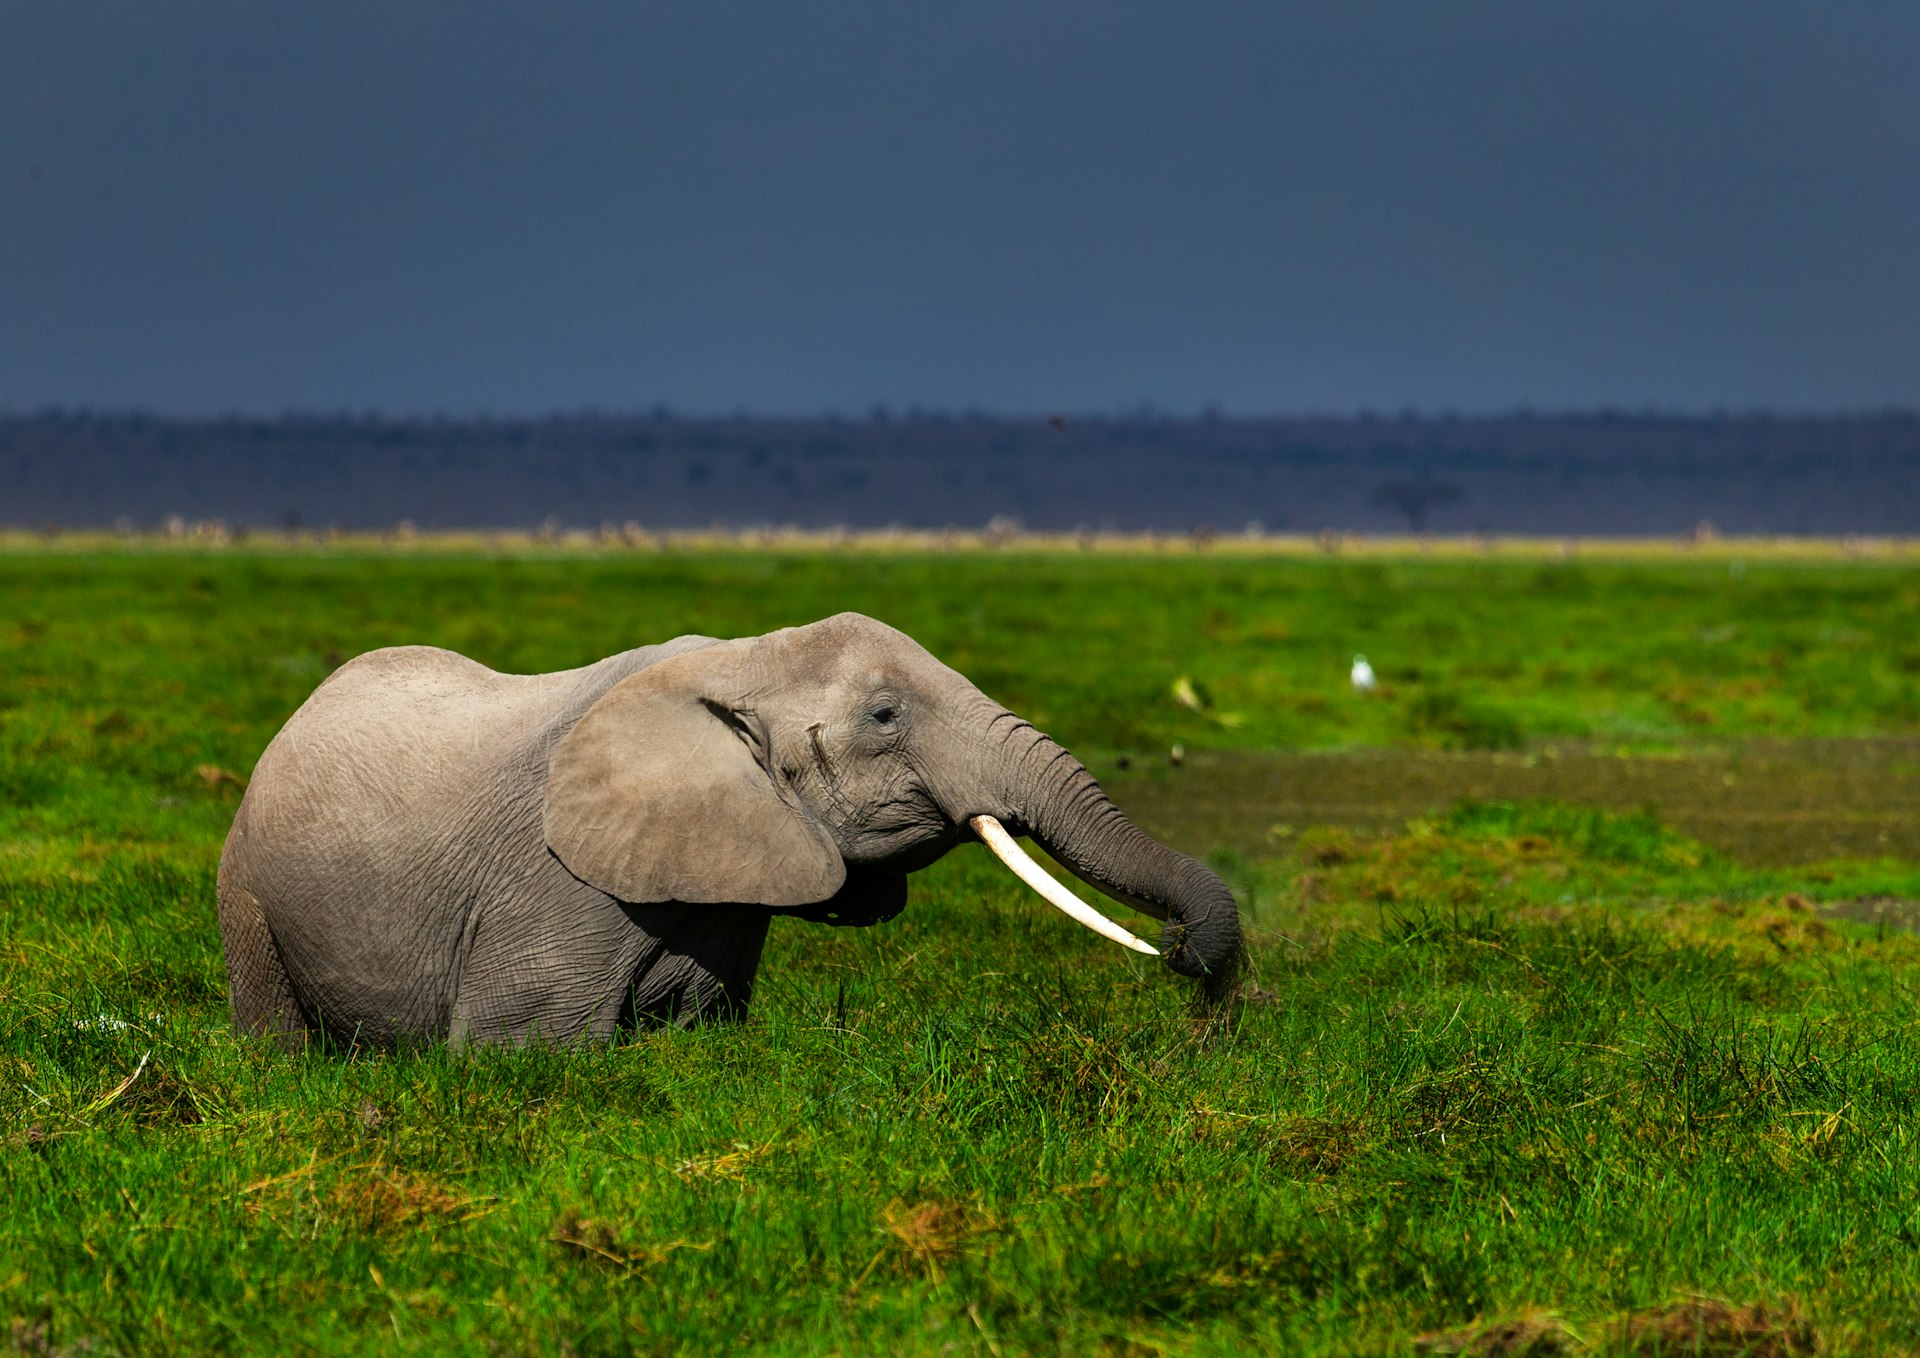 Um elefante africano se alimentando nas pastagens verdes, condado de Kajiado, Amboseli, Quênia